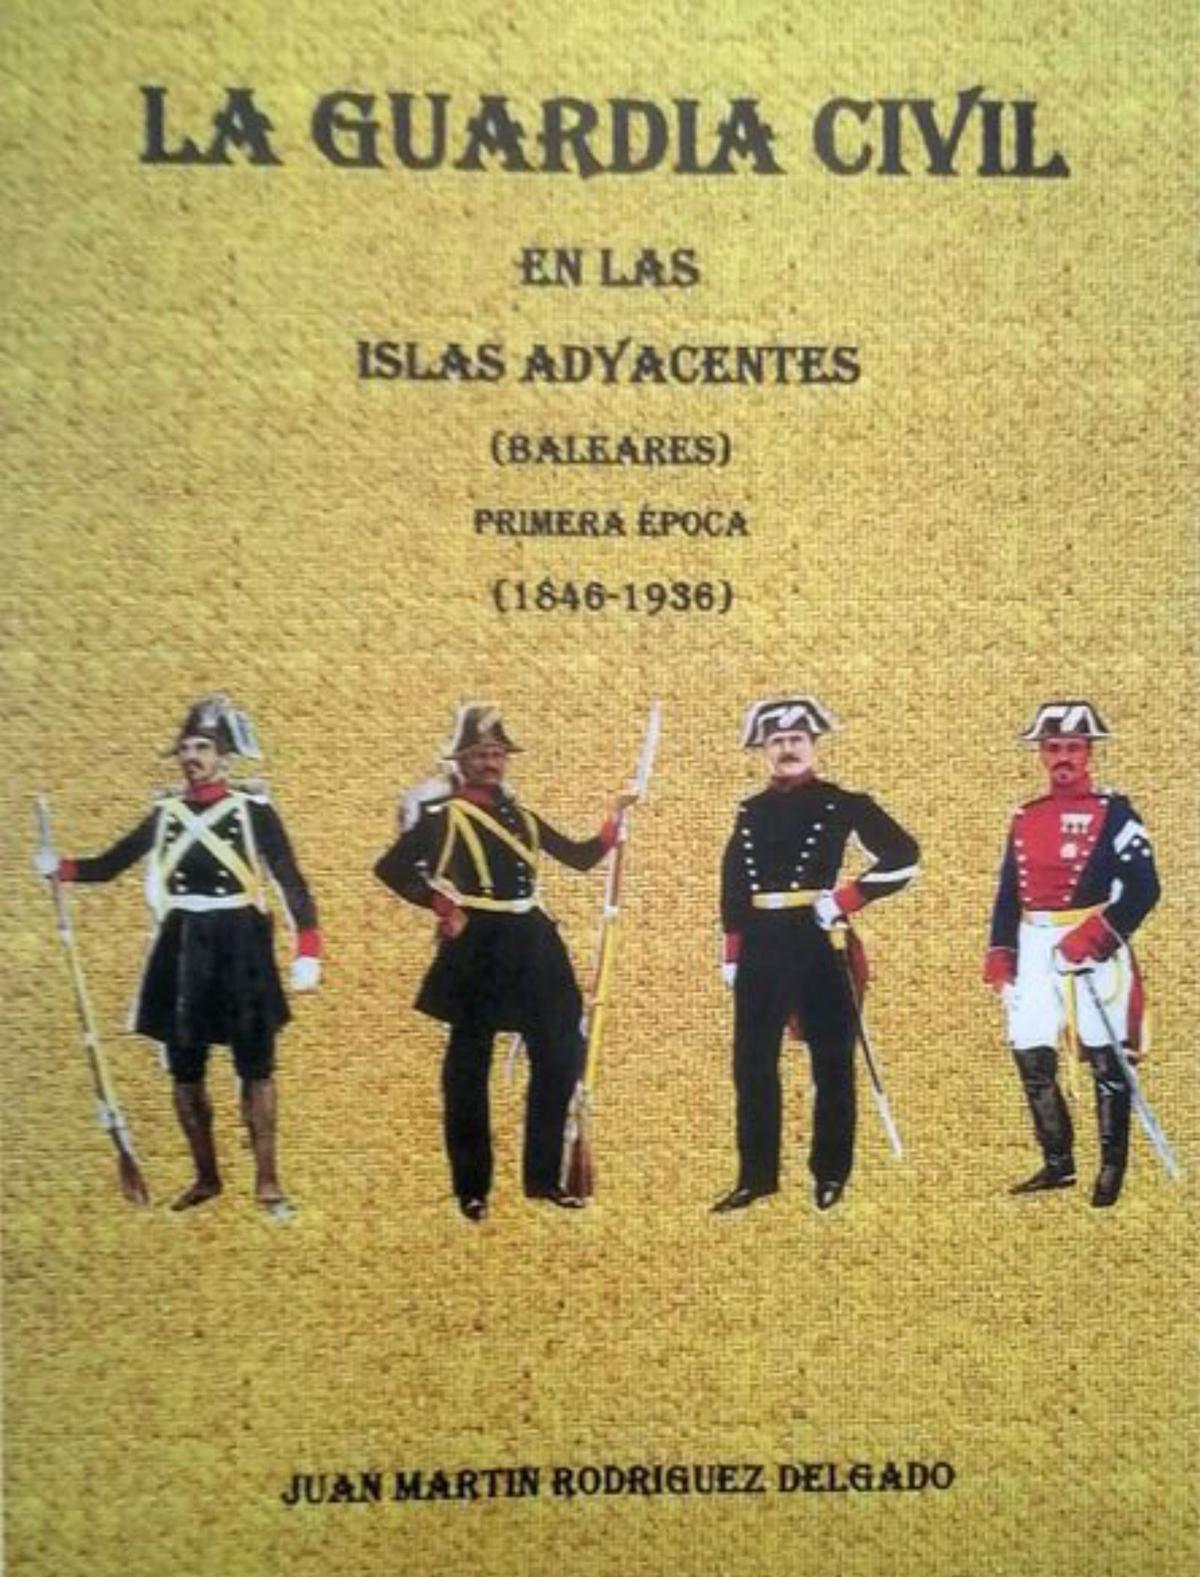 Portada del libro: La Guardia Civil en las Islas Adyacentes, del sargento mayor Juan Martín Rodríguez.